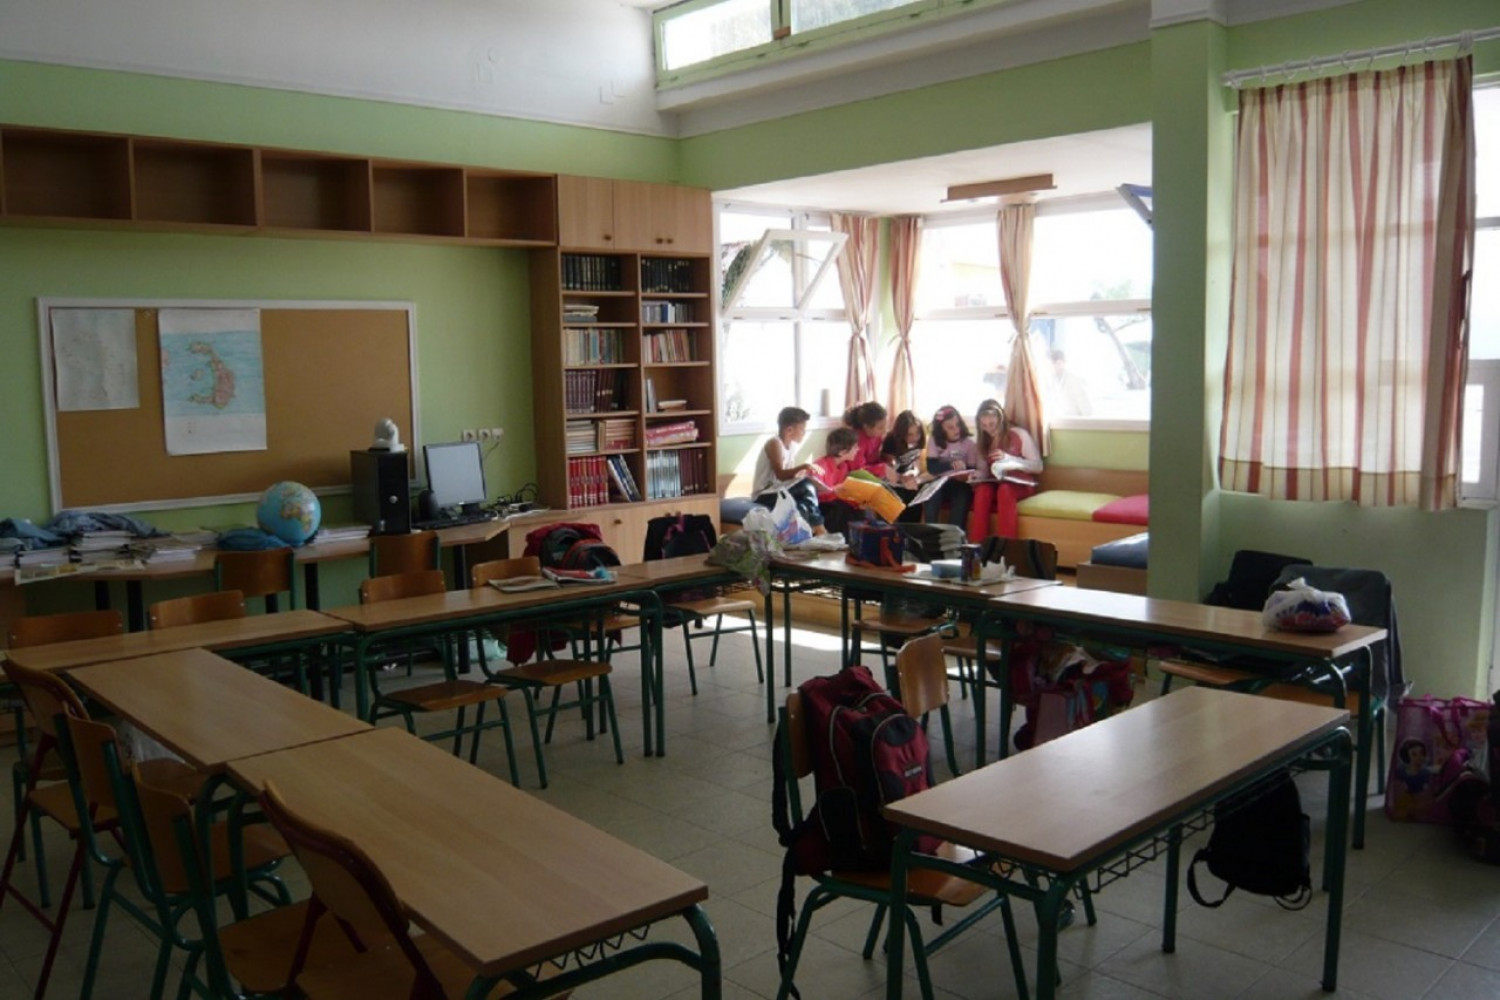  #Eco: Το πρώτο πράσινο σχολείο στη Σκύρο με τη συγχρηματοδότηση του #ΕΣΠΑ